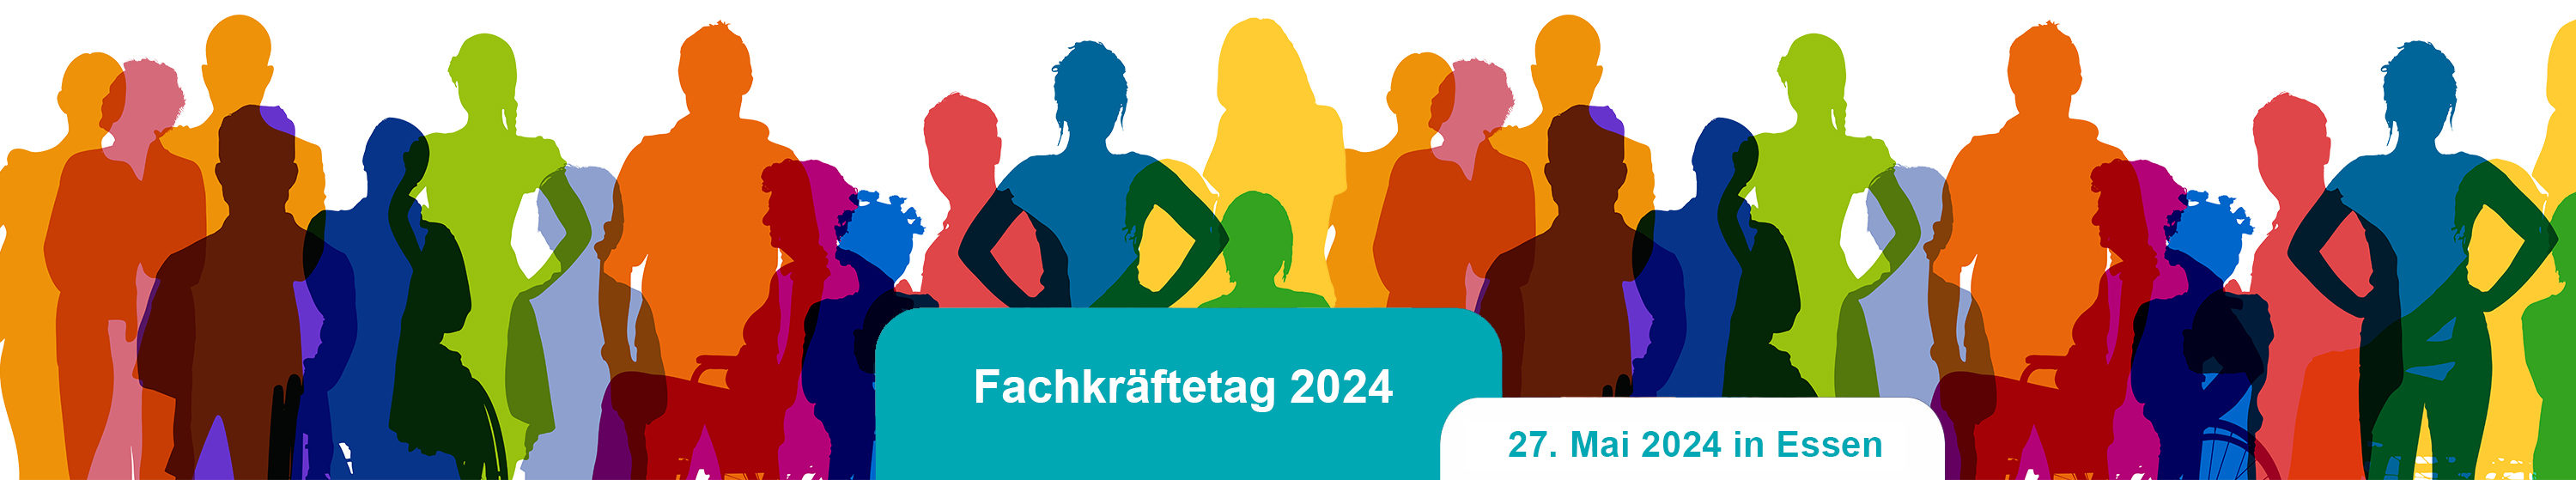 Bild einer Gruppe von Personen aus der Gesellschaft mit einem blauem und weißem Balken, auf dem Fachkräftetag 2024 - 27. Mai 2024, in Essen steht